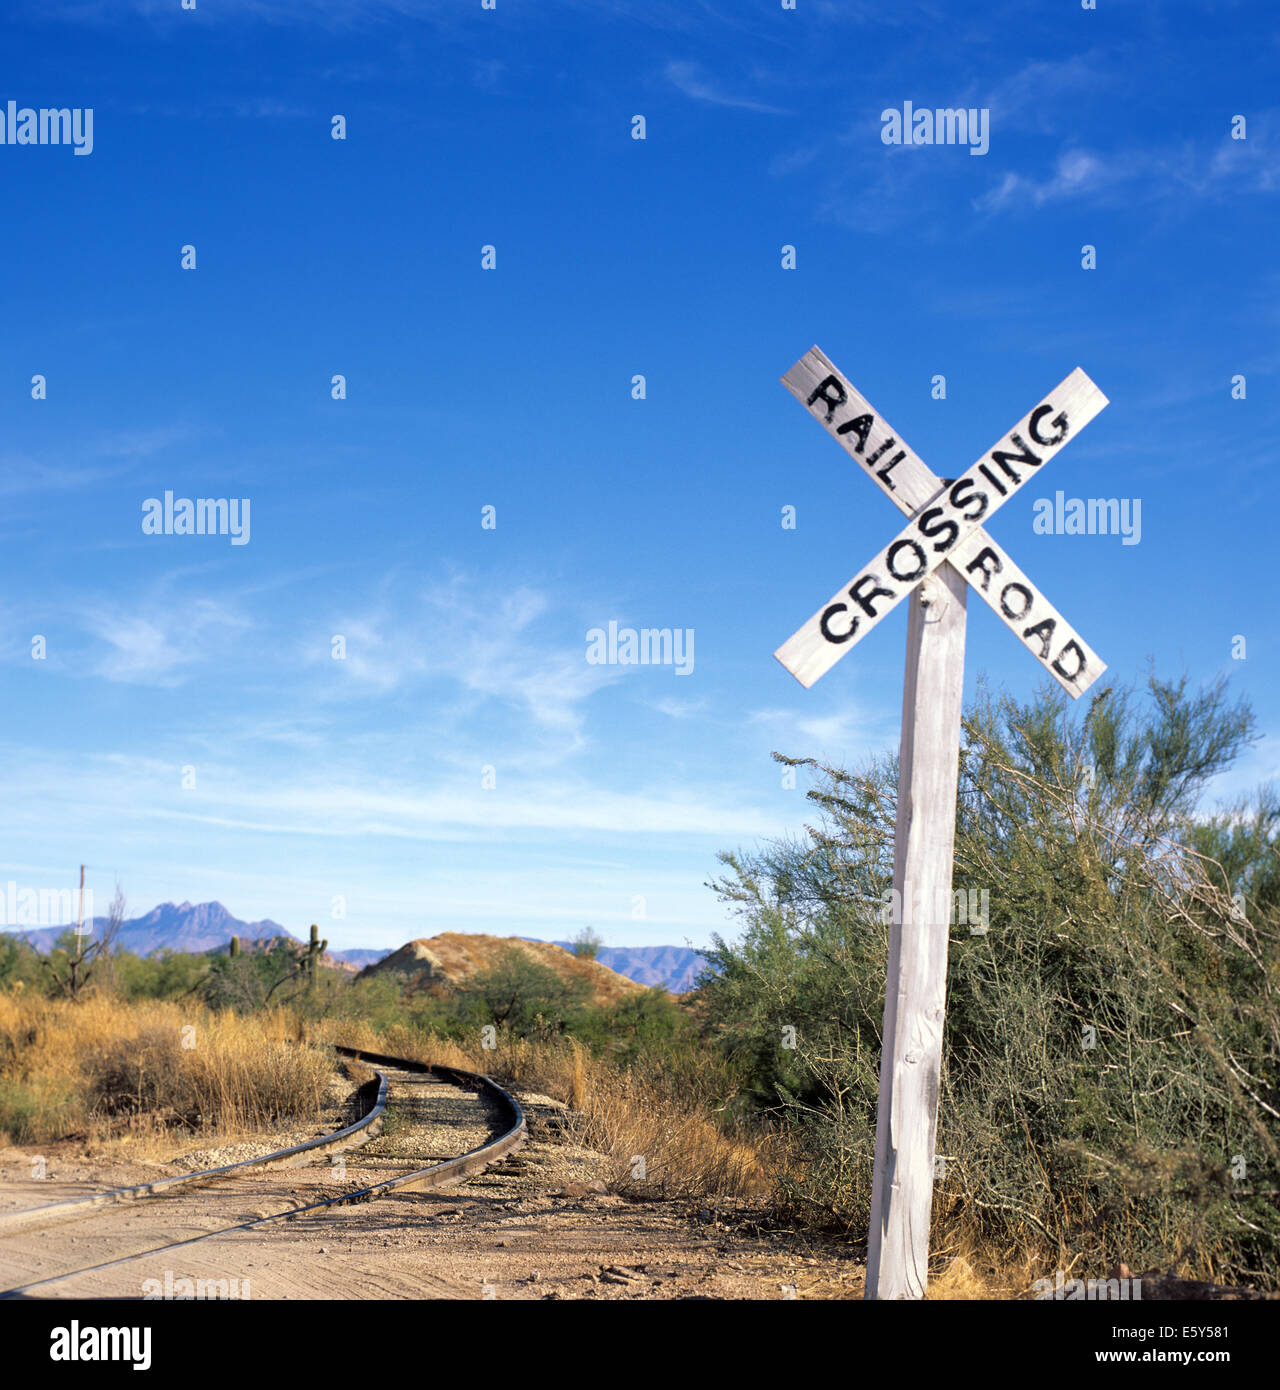 Immagine di stock di un attraversamento ferroviario segno nel deserto dell'Arizona con brani in esecuzione dal segno. Foto Stock